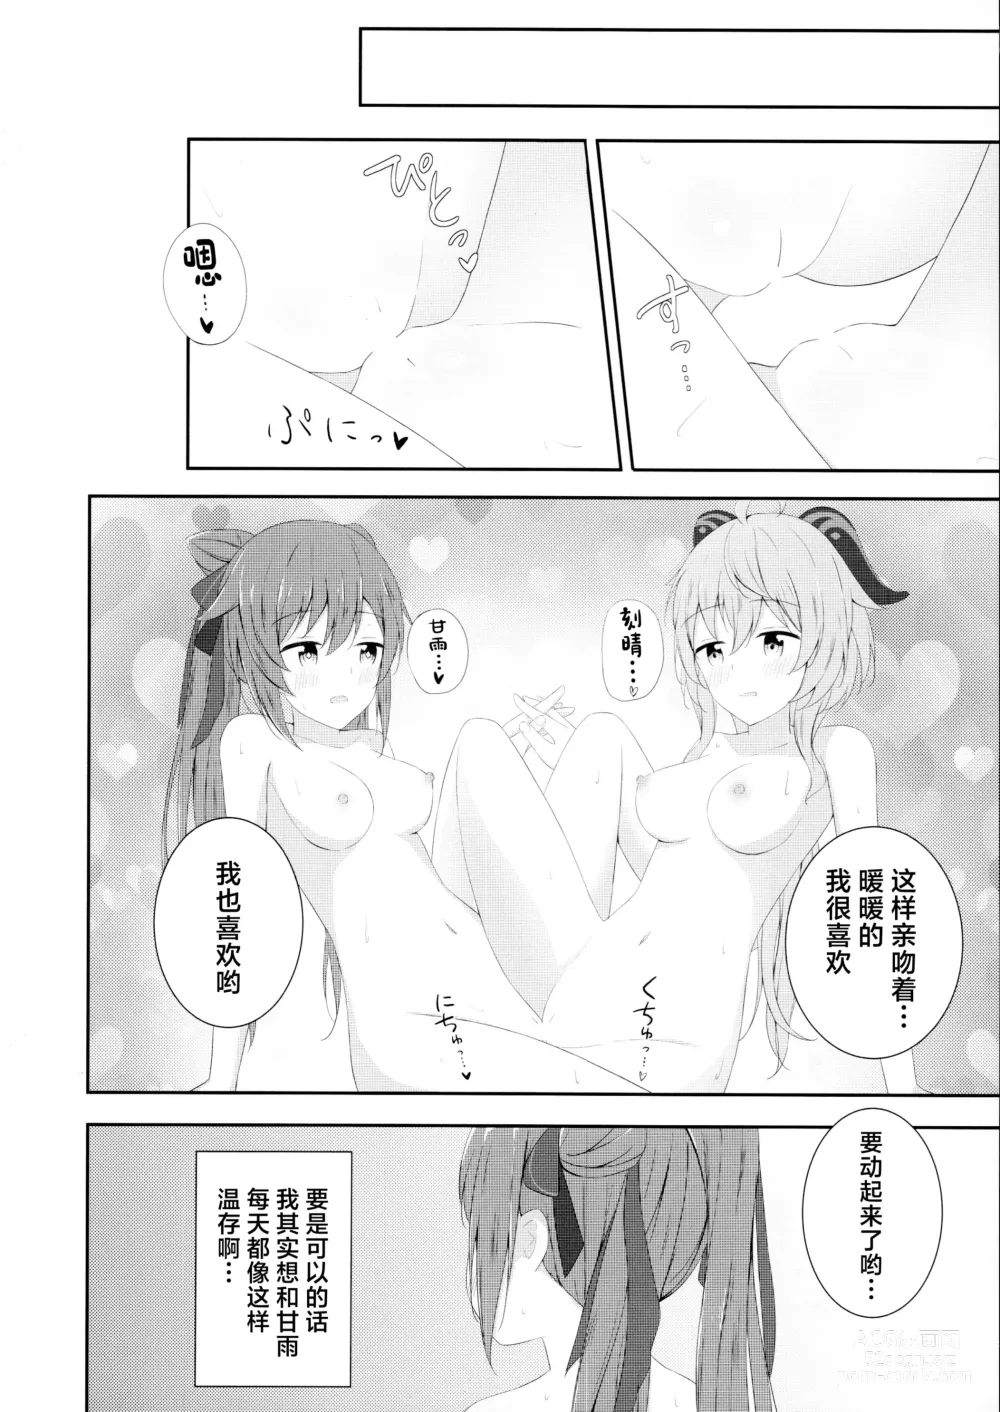 Page 23 of doujinshi KokuKan wa Echi ga Shitai!